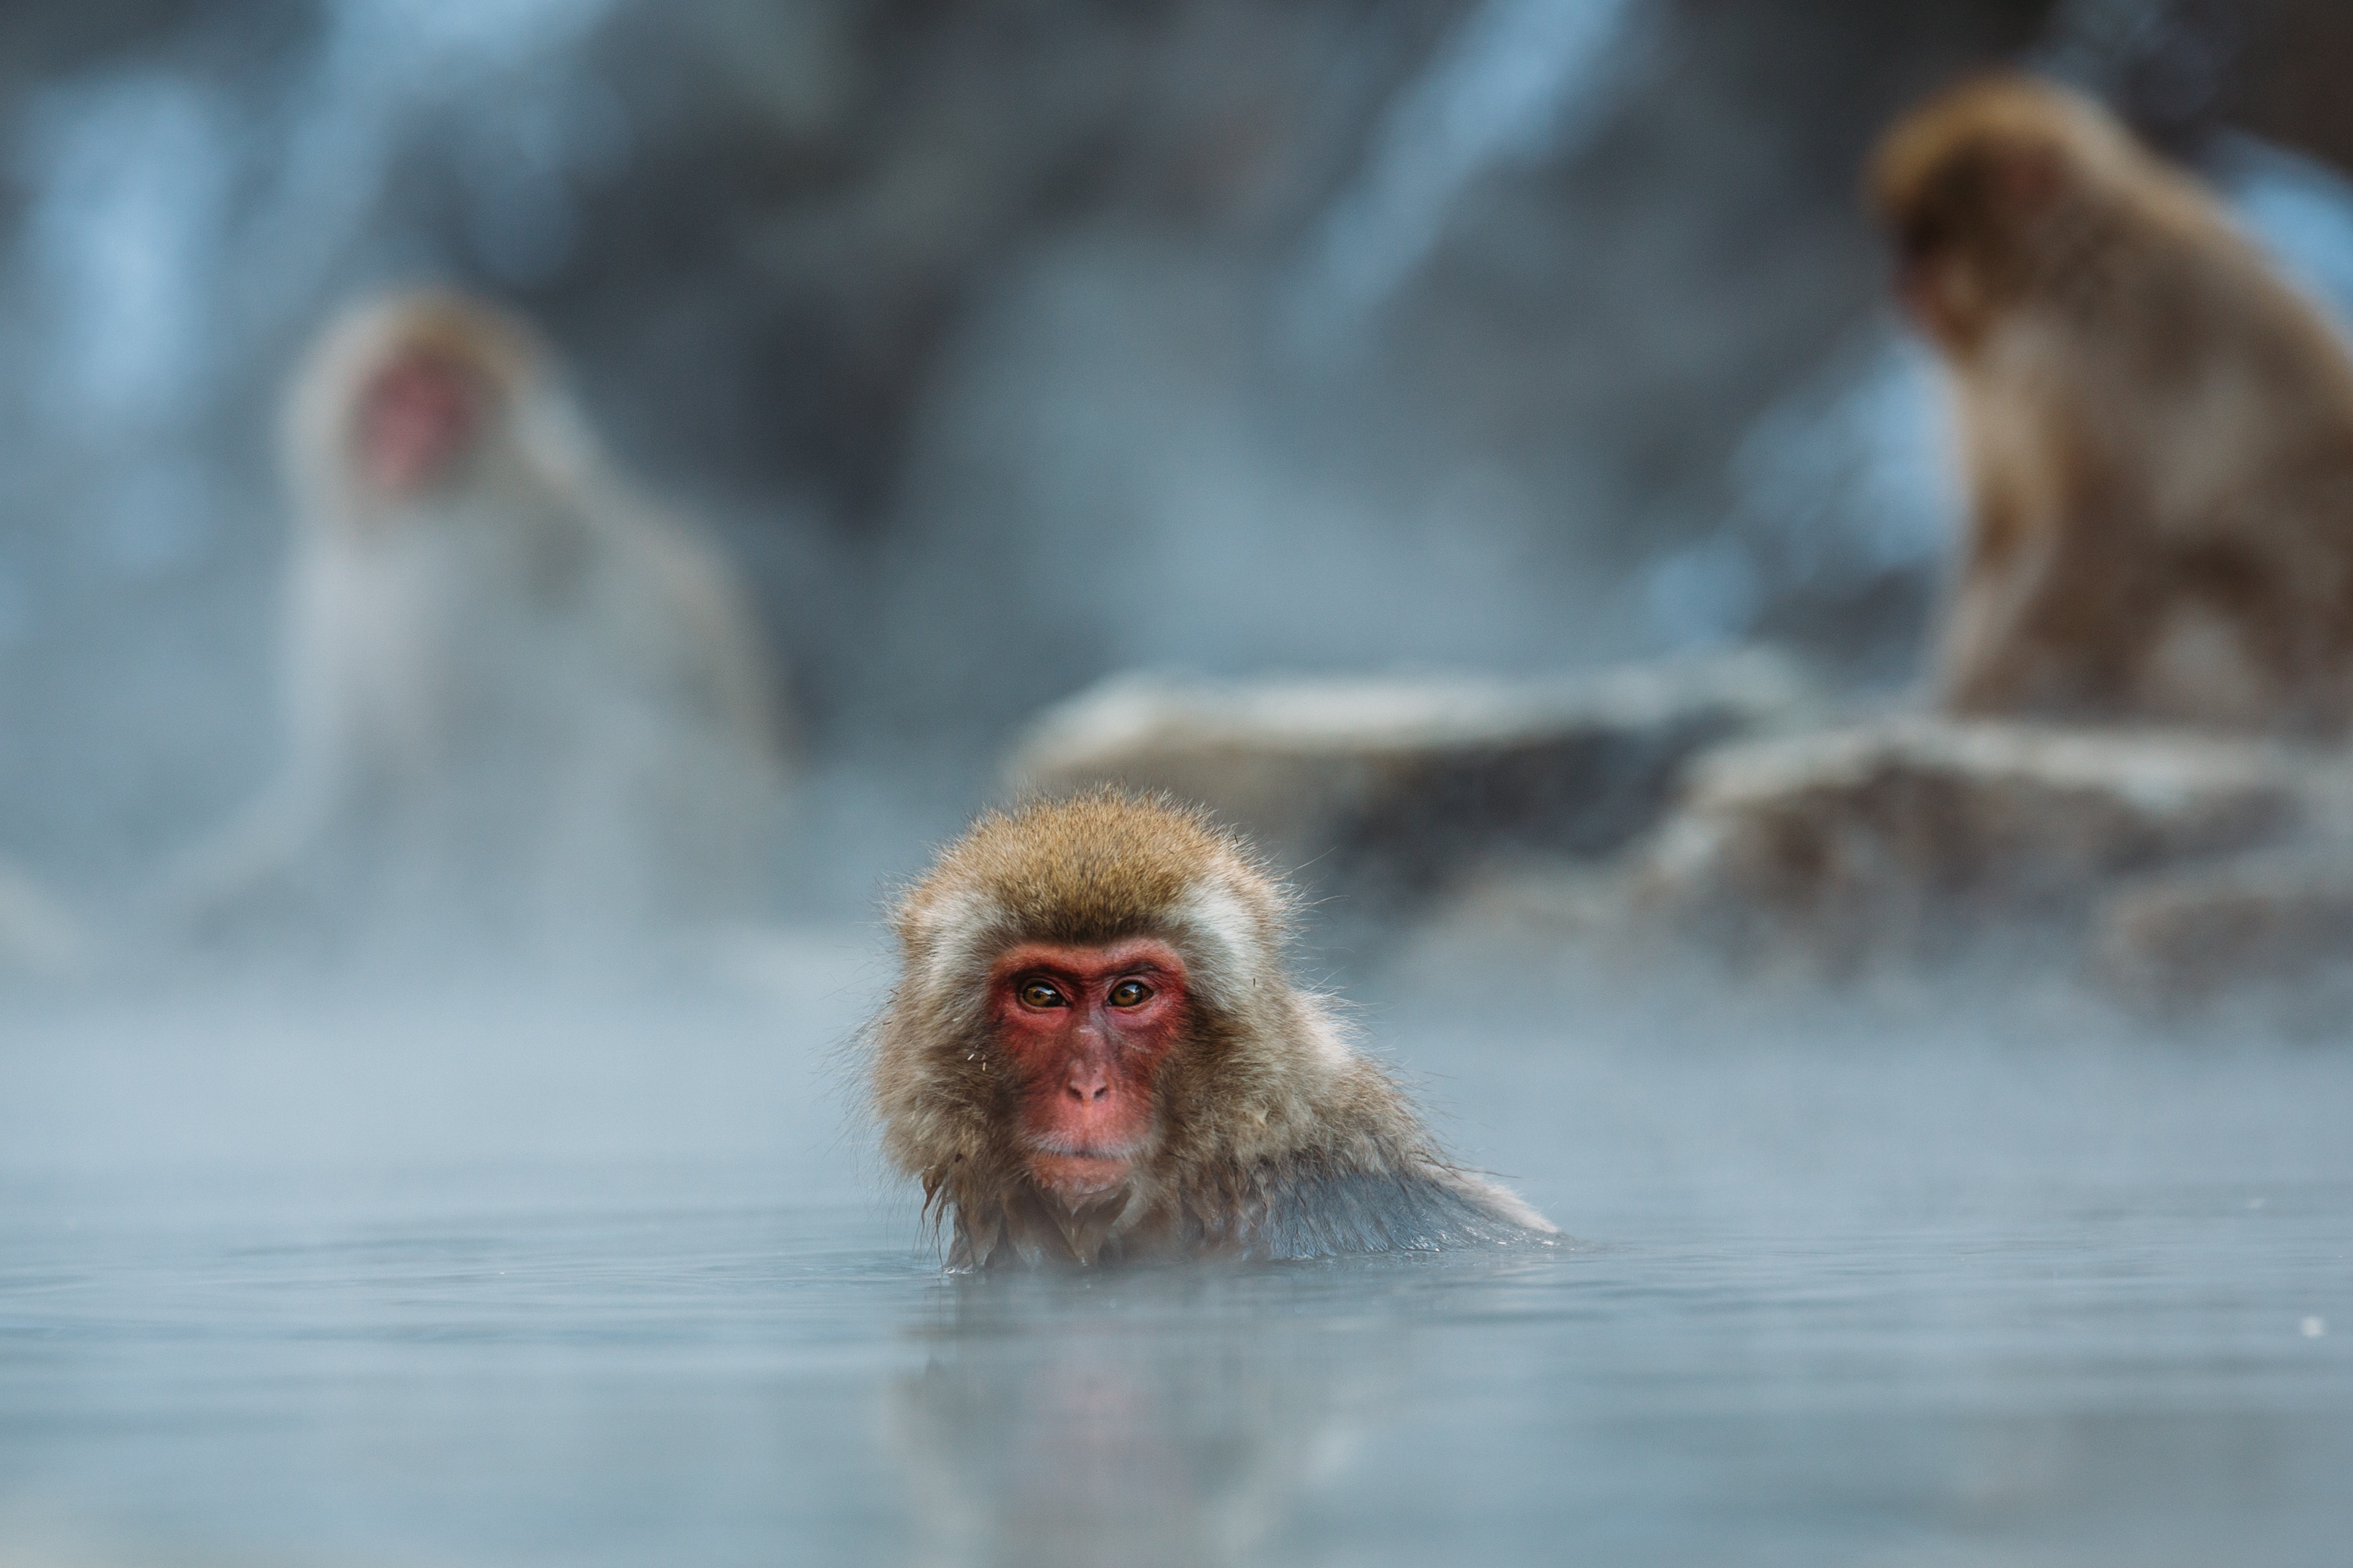 Monkeys take hot baths